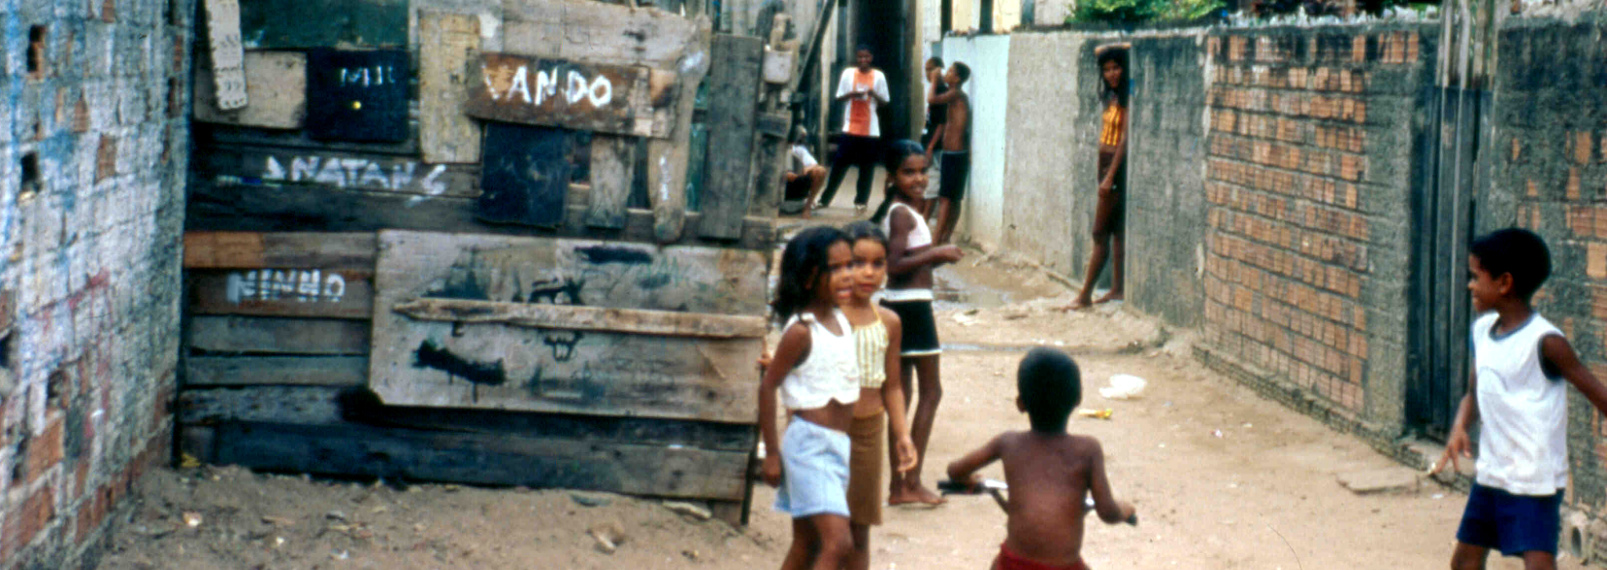 spielende Kinder in einer Gasse einer Favela